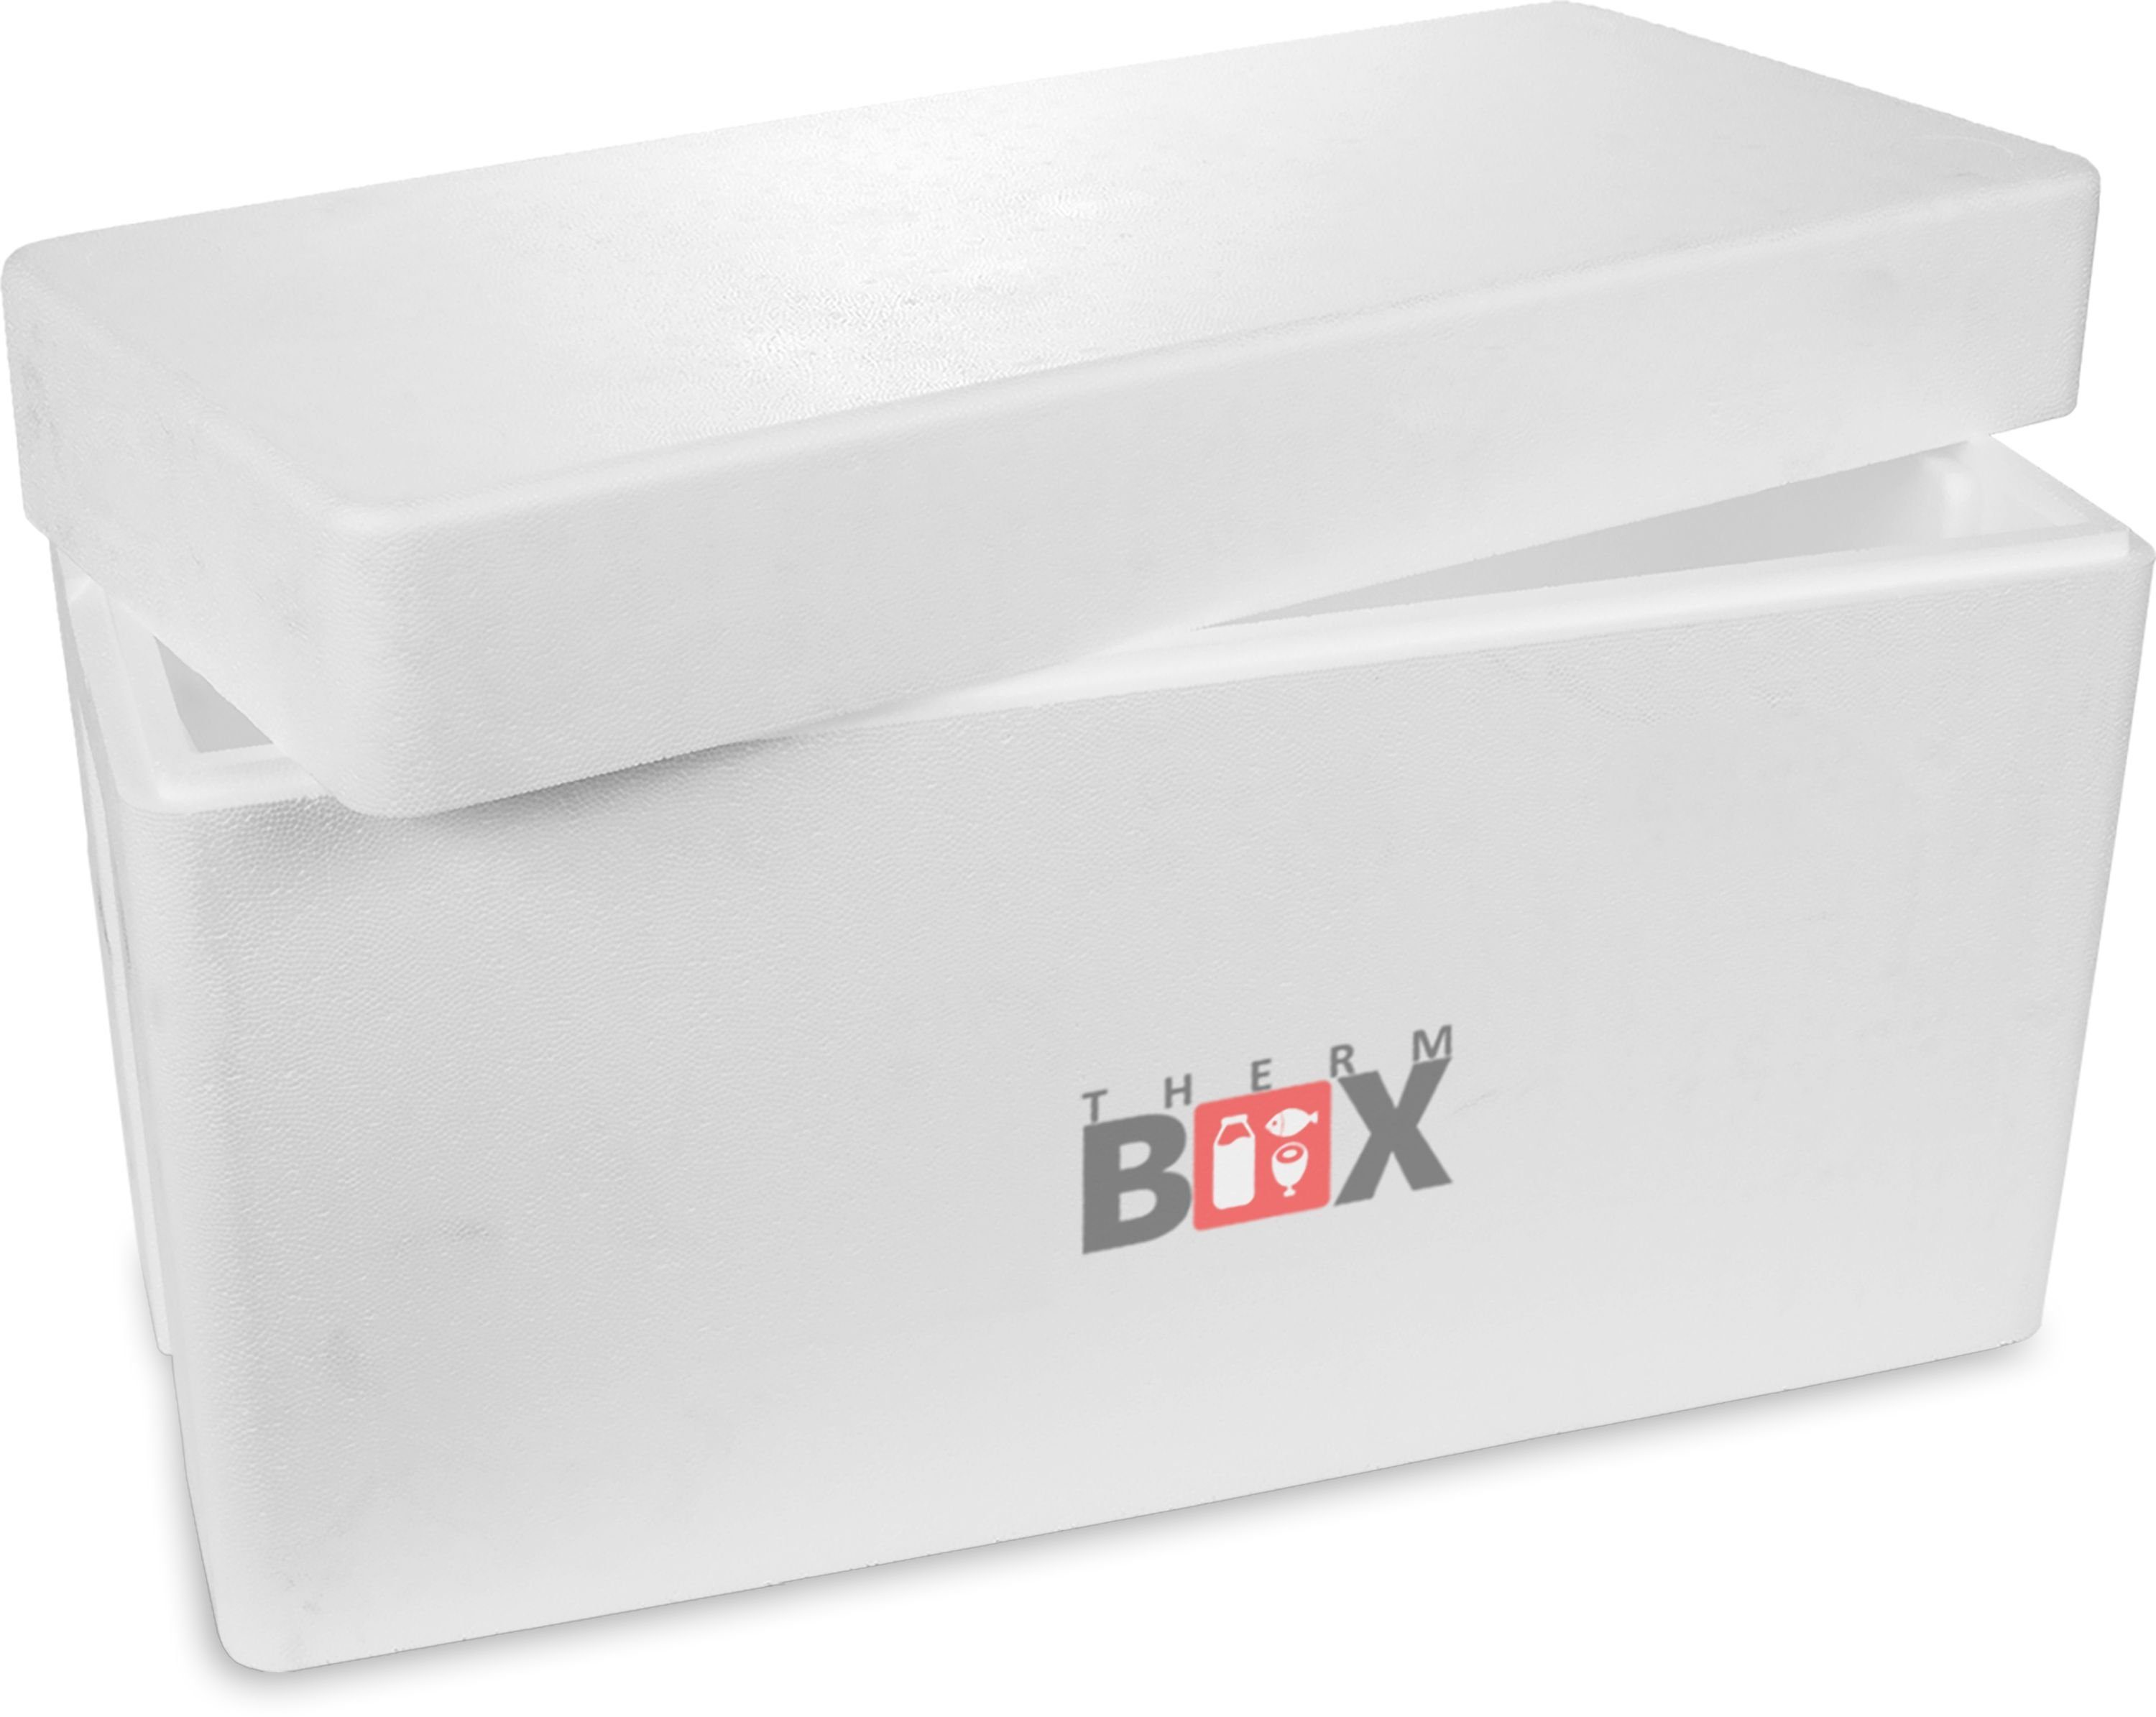 THERM-BOX Thermobehälter Styroporbox 83W Wand: 2,5cm 83L Innenmaß:70x29x39cm, Styropor-Verdichtet, (1, 0-tlg., Box mit Deckel im Karton), Isolierbox Thermobox Kühlbox Warmhaltebox Wiederverwendbar